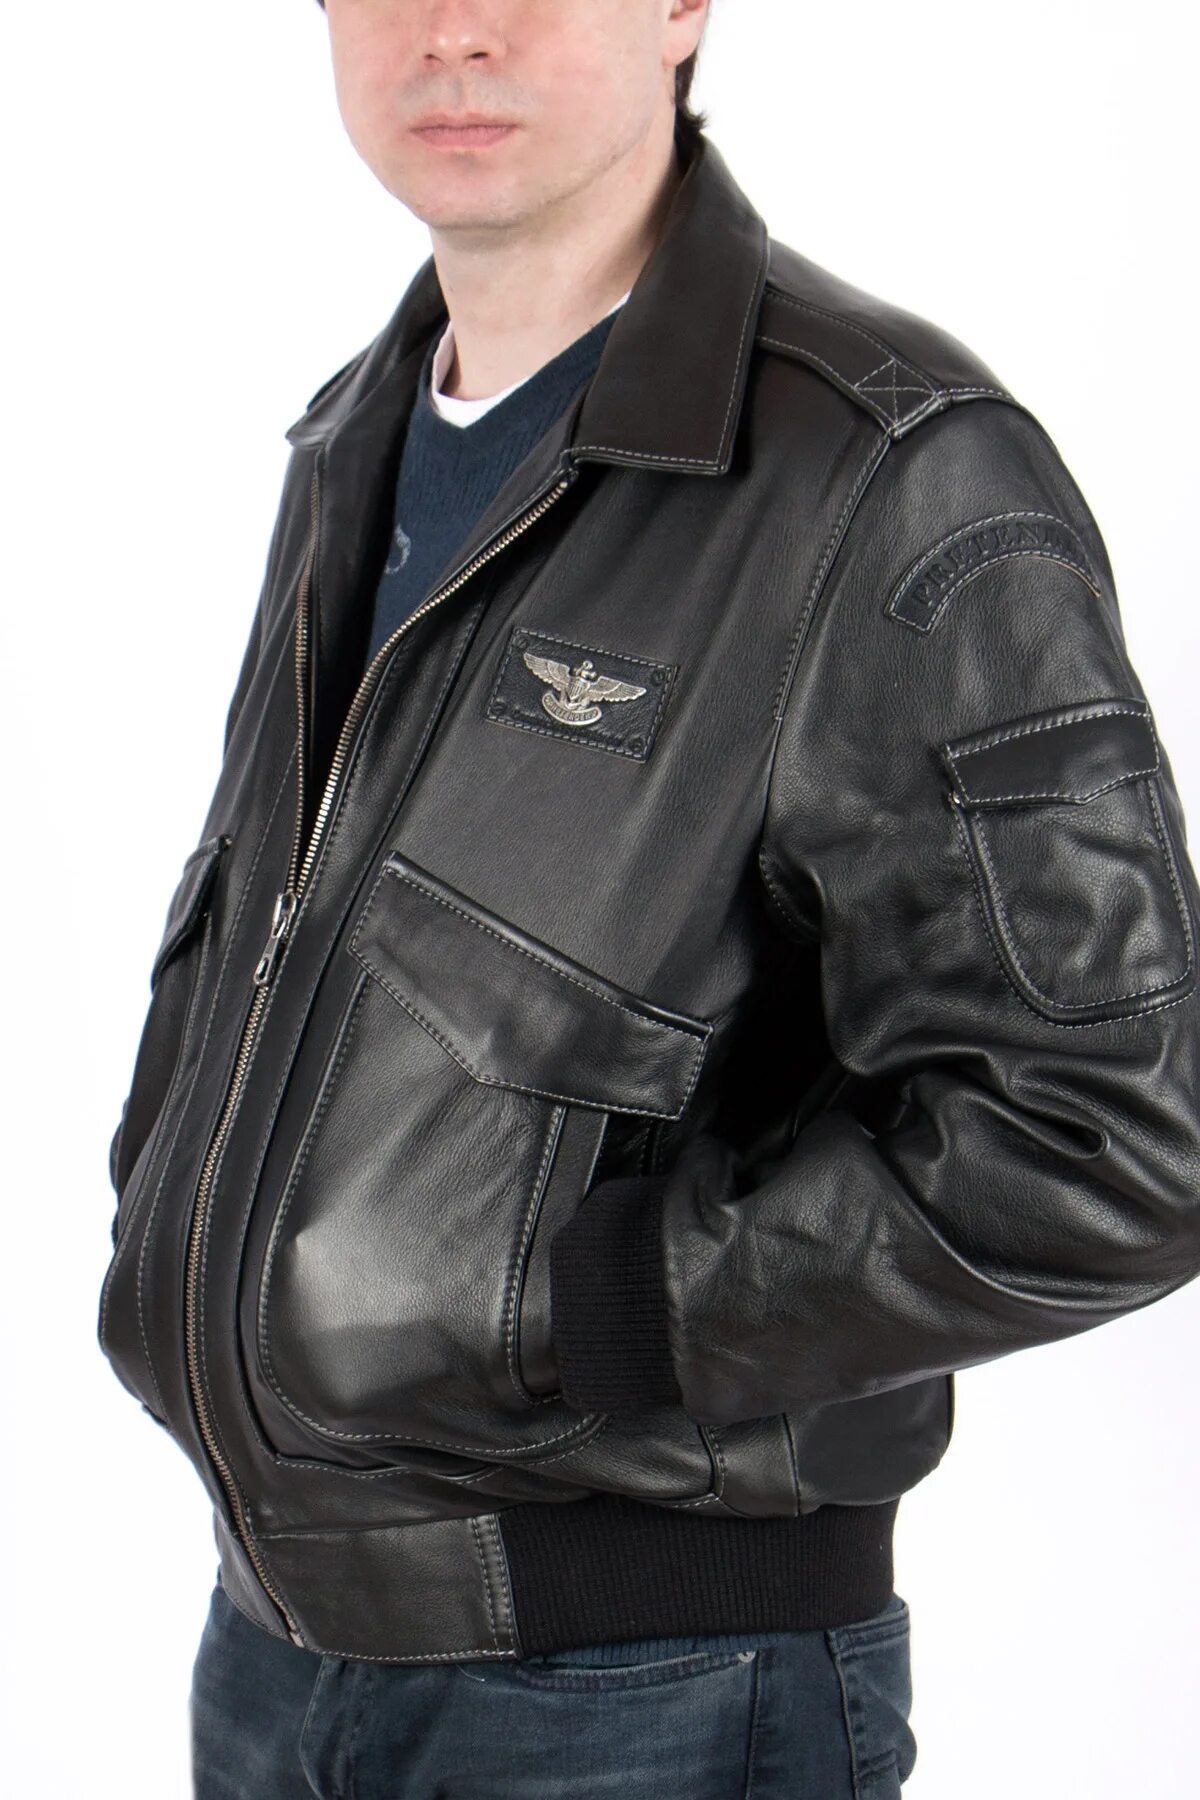 Кожан спб. Куртка кожаная пилот Феникс-2. Куртка пилот Pretender Феникс. Кожаная куртка мужская летная Техноавиа. Куртки Феникс-2 мужские кожаные.